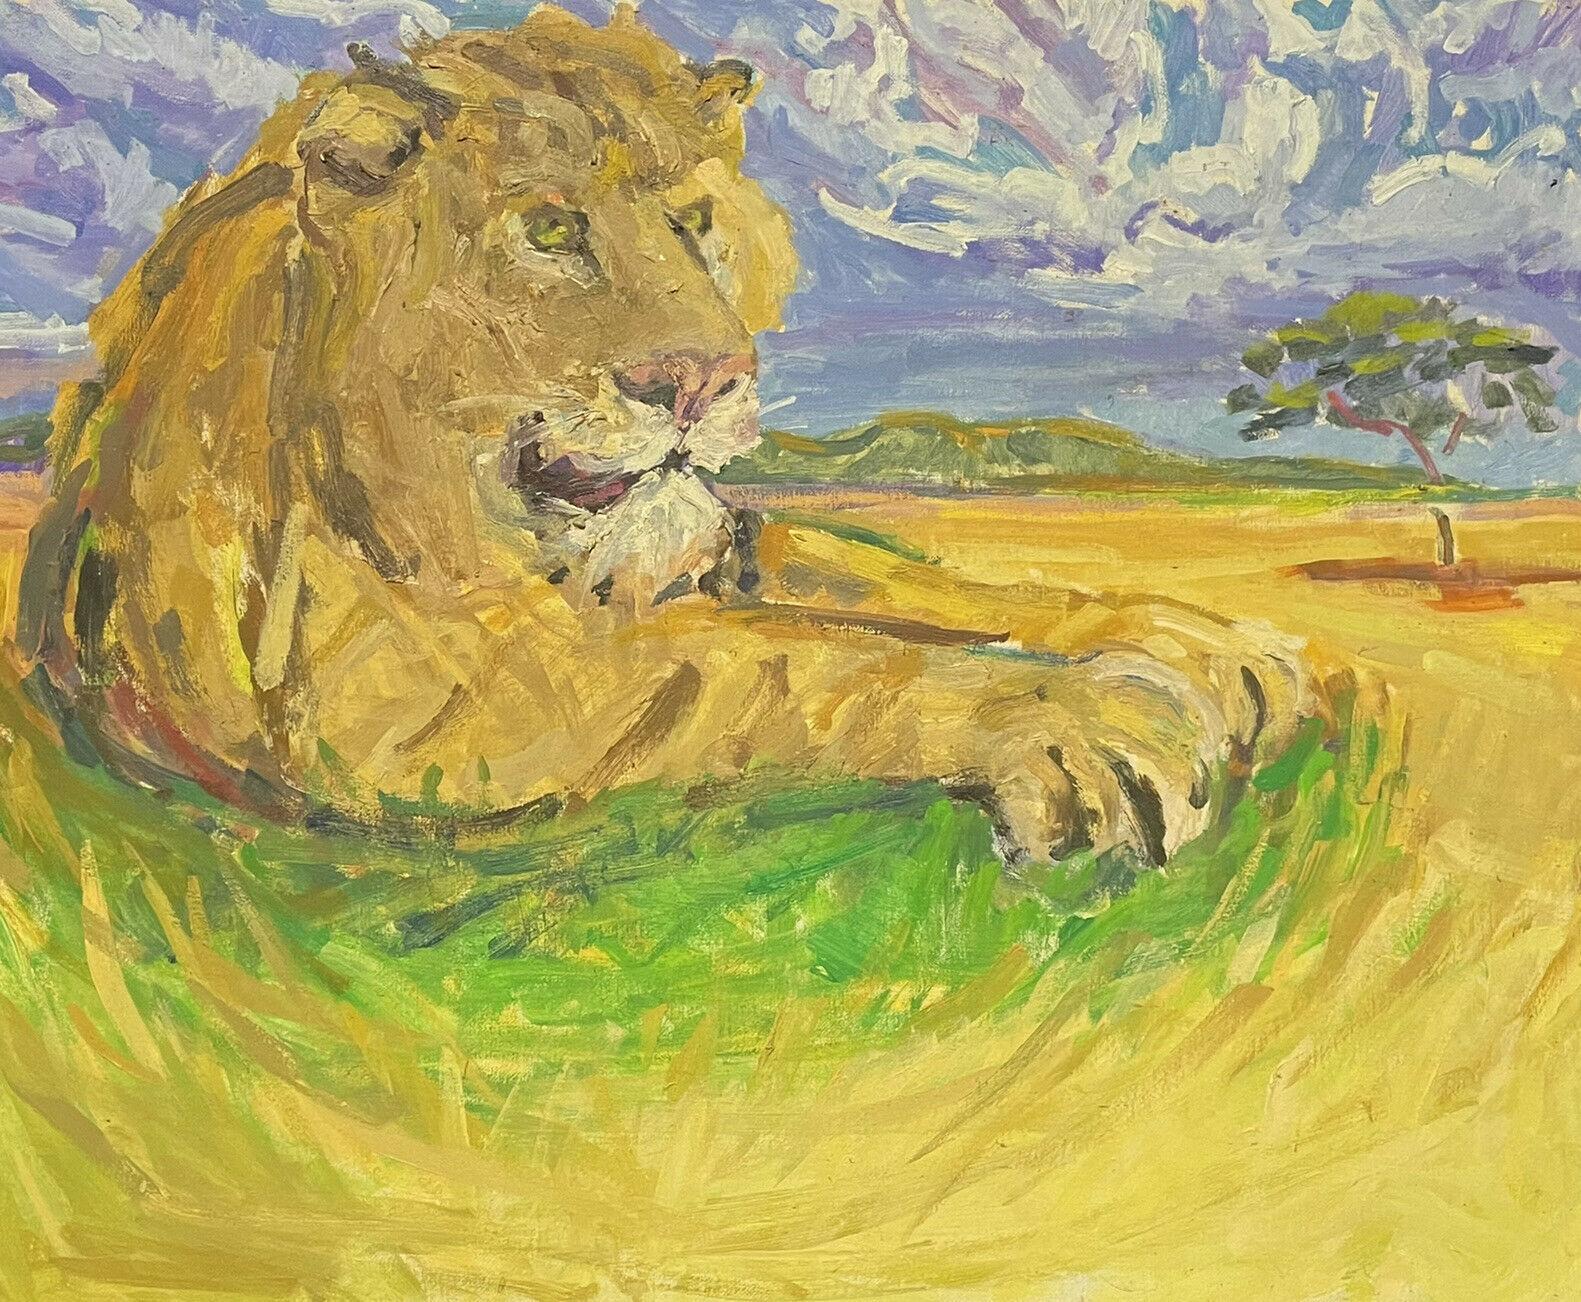 Landscape Painting Douglas Stuart Allen - Grande peinture à l'huile impressionniste signée - Lion reposant dans un paysage